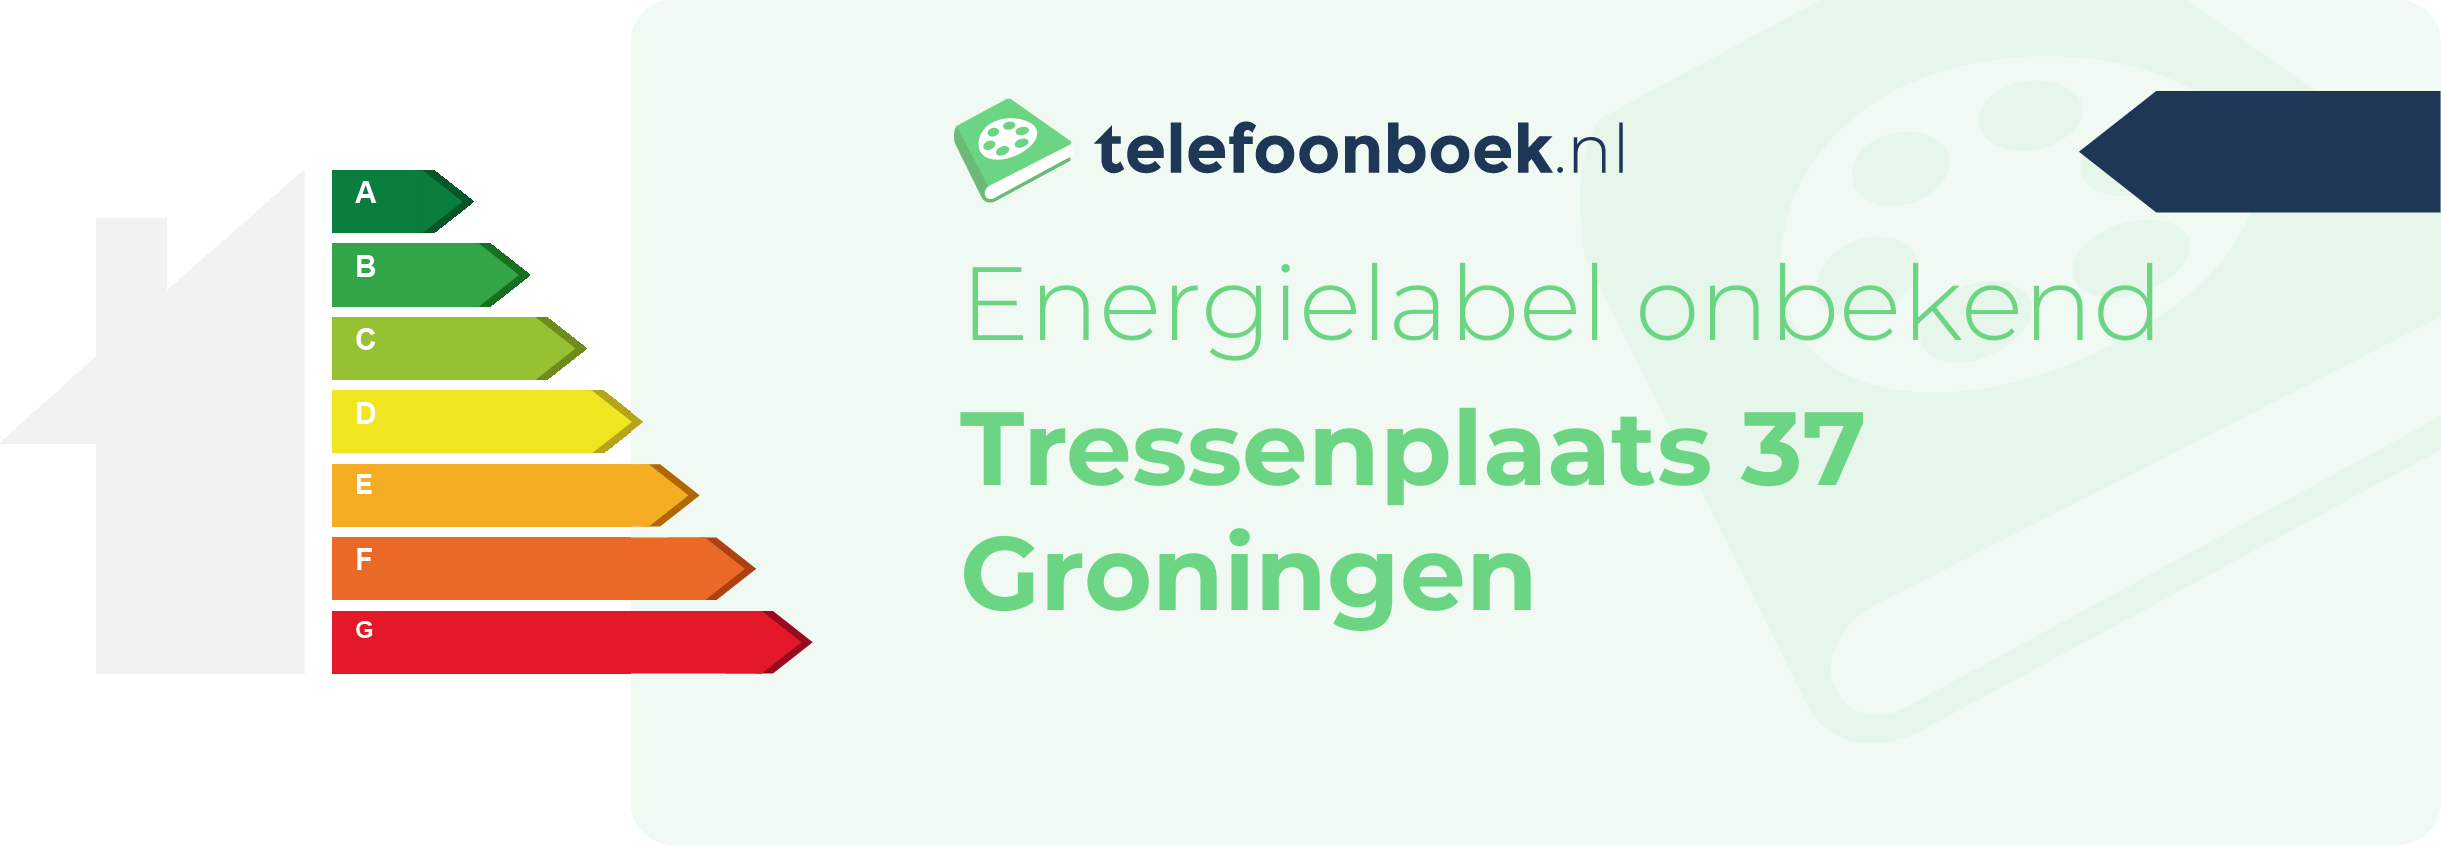 Energielabel Tressenplaats 37 Groningen